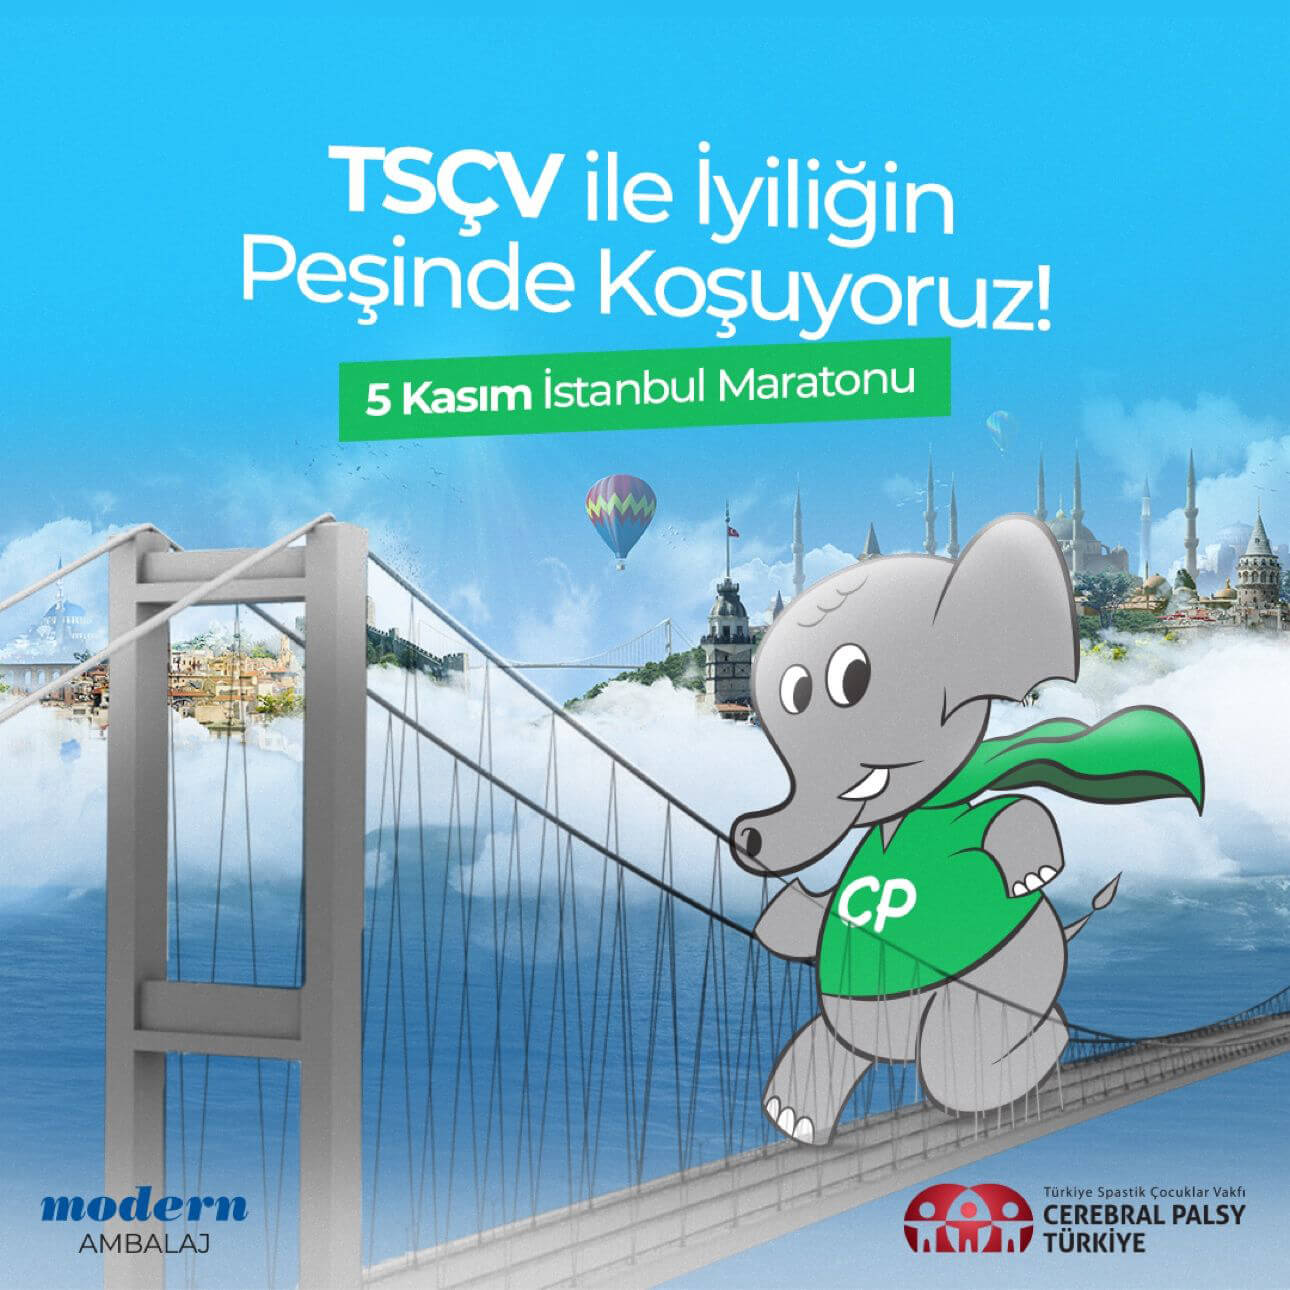 Modern Ambalaj olarak 45. İstanbul Maratonu'nda TSÇV (Türkiye Spastik Çocuklar Vakfı) için koştuk.